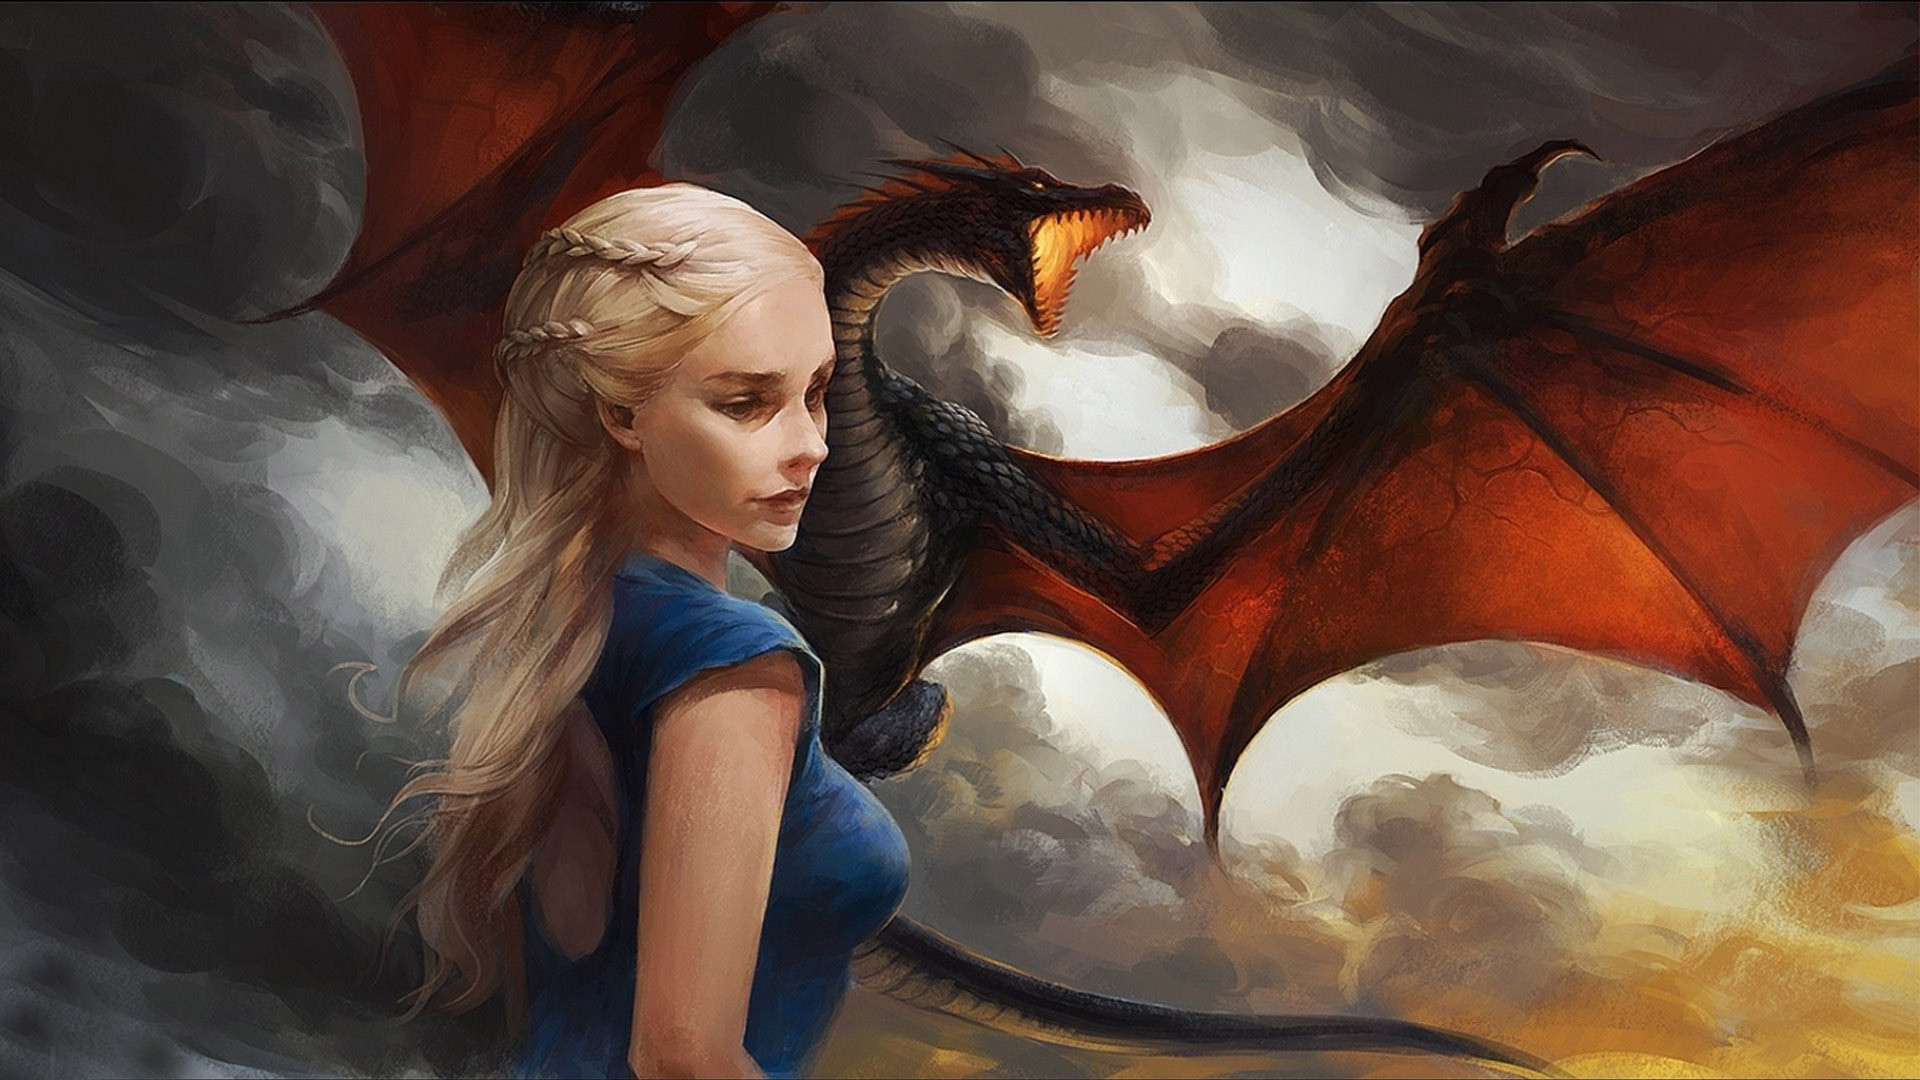 1920x1080 Daenerys Targaryen wallpaper Daenerys Targaryen Game of Thrones